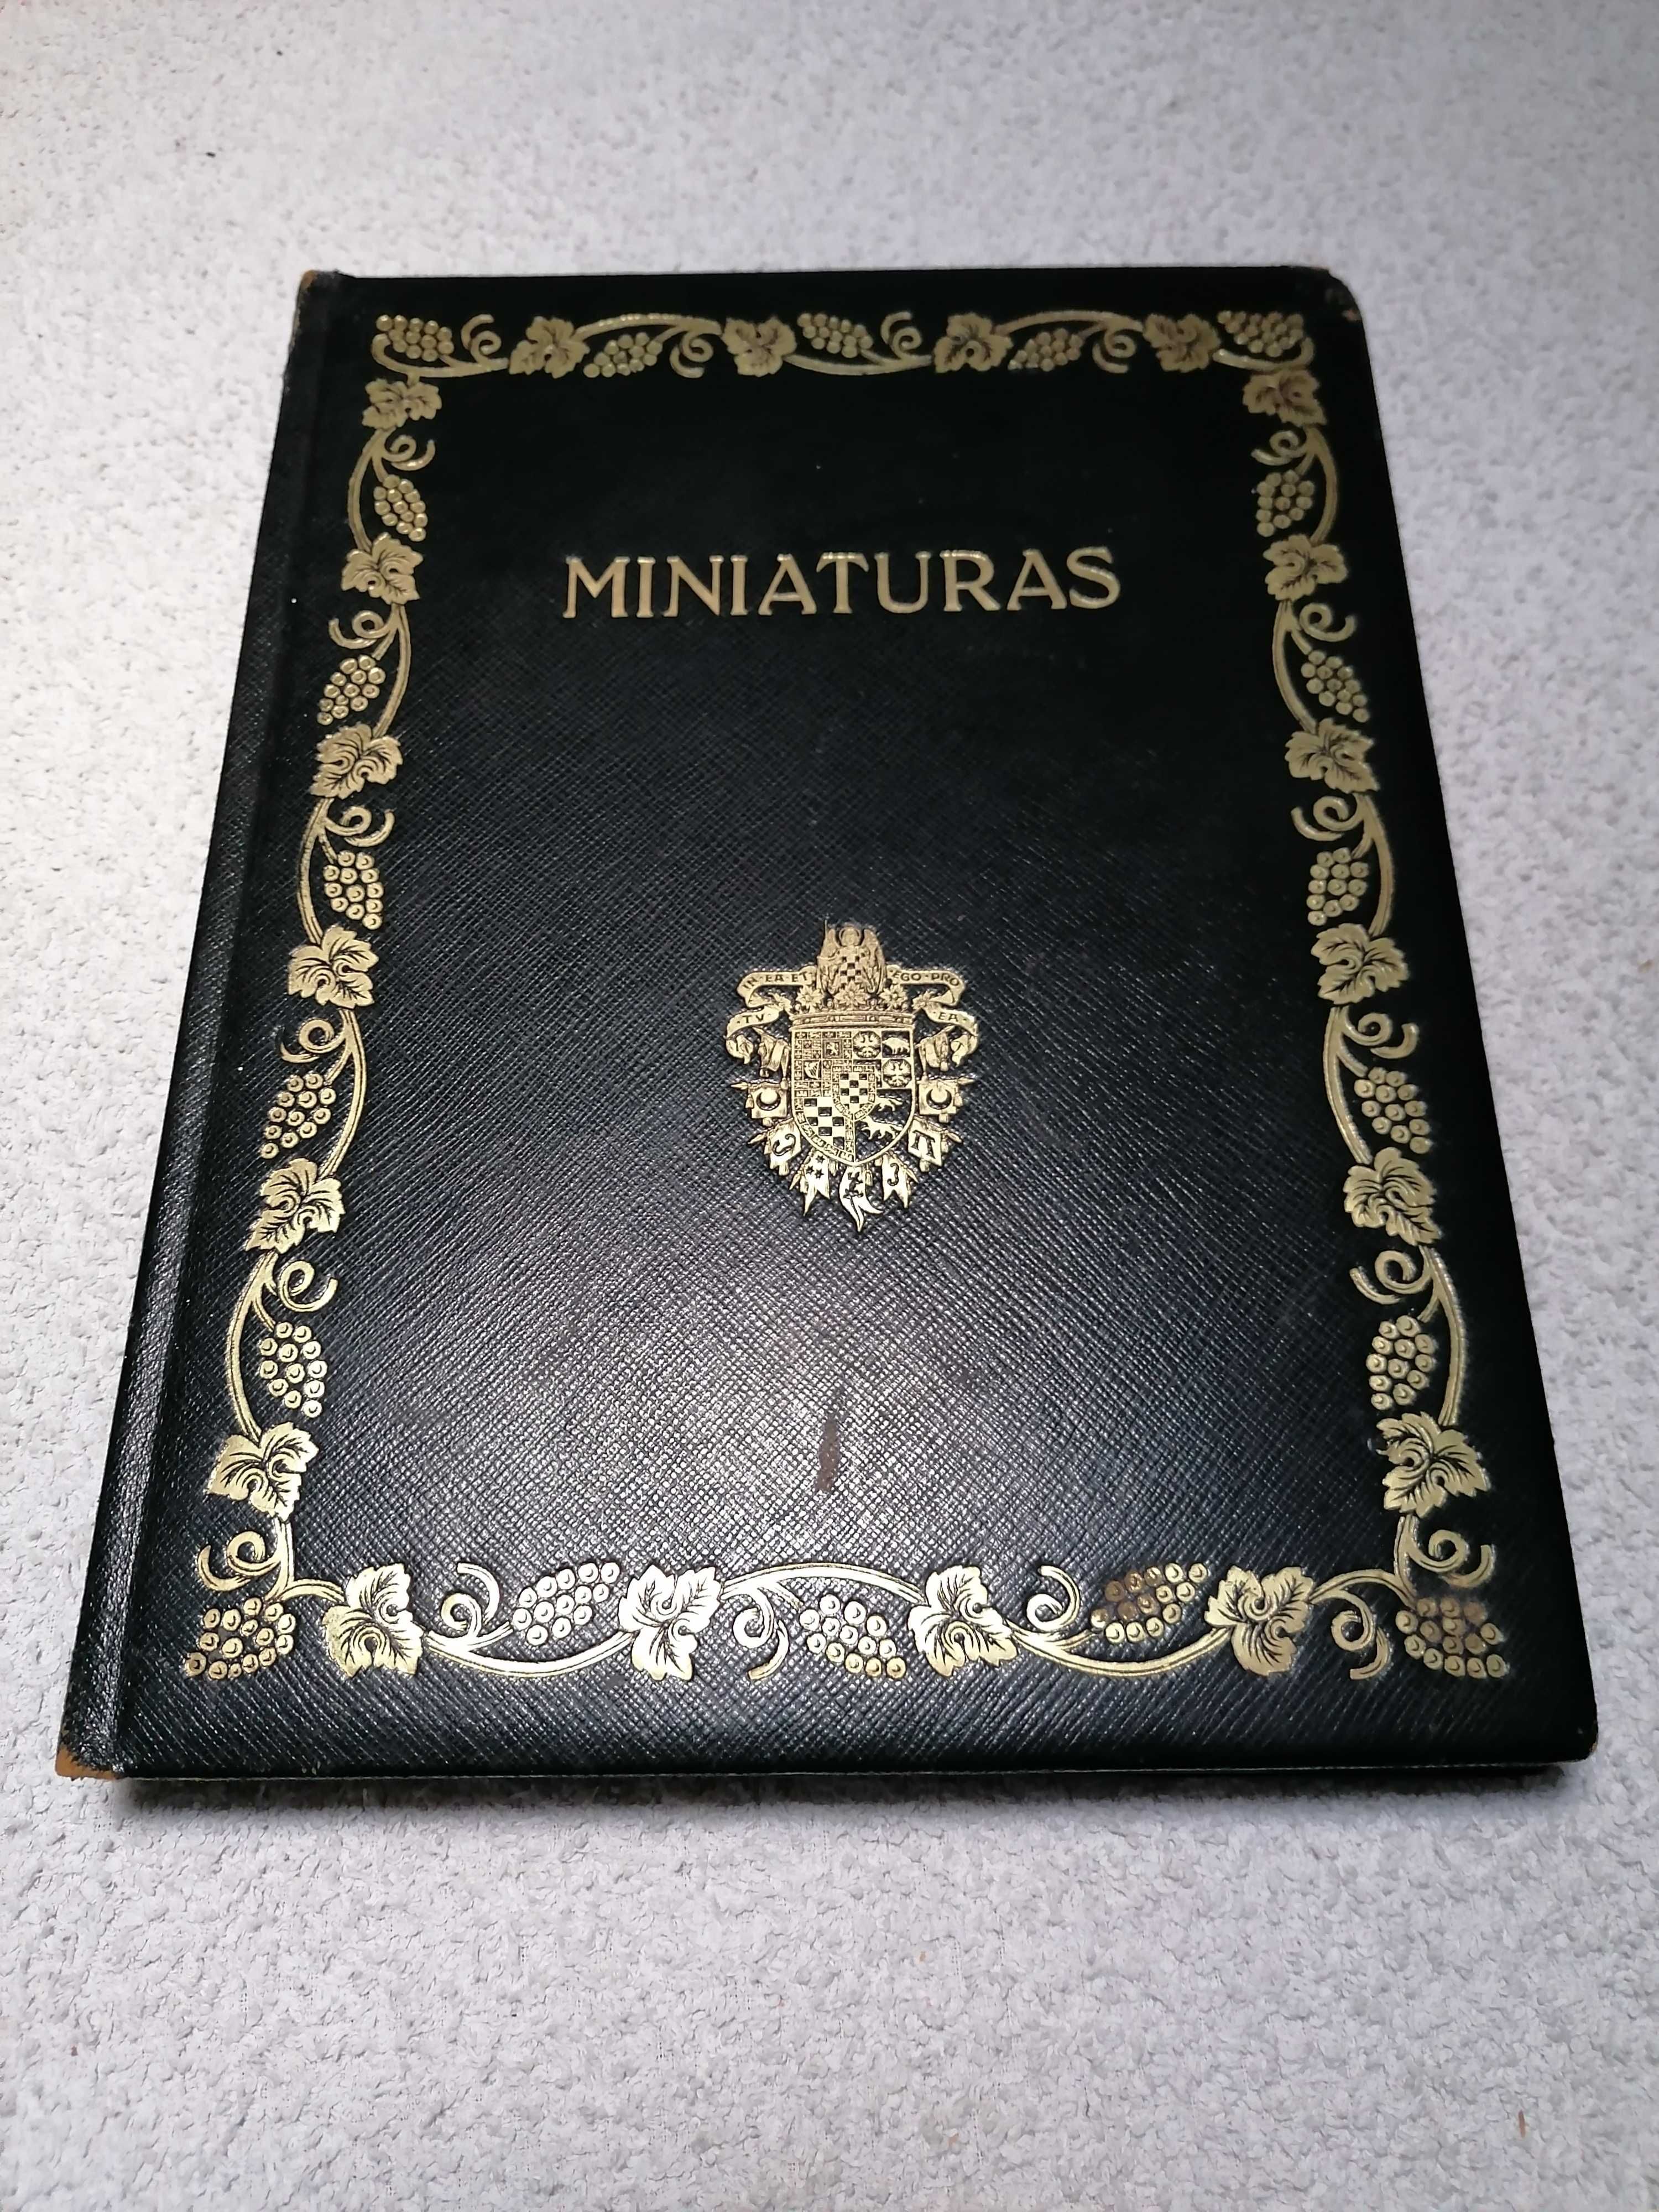 Catalogo de Las Miniaturas y Pequeños Retratos - Dq Berwick y De Alba